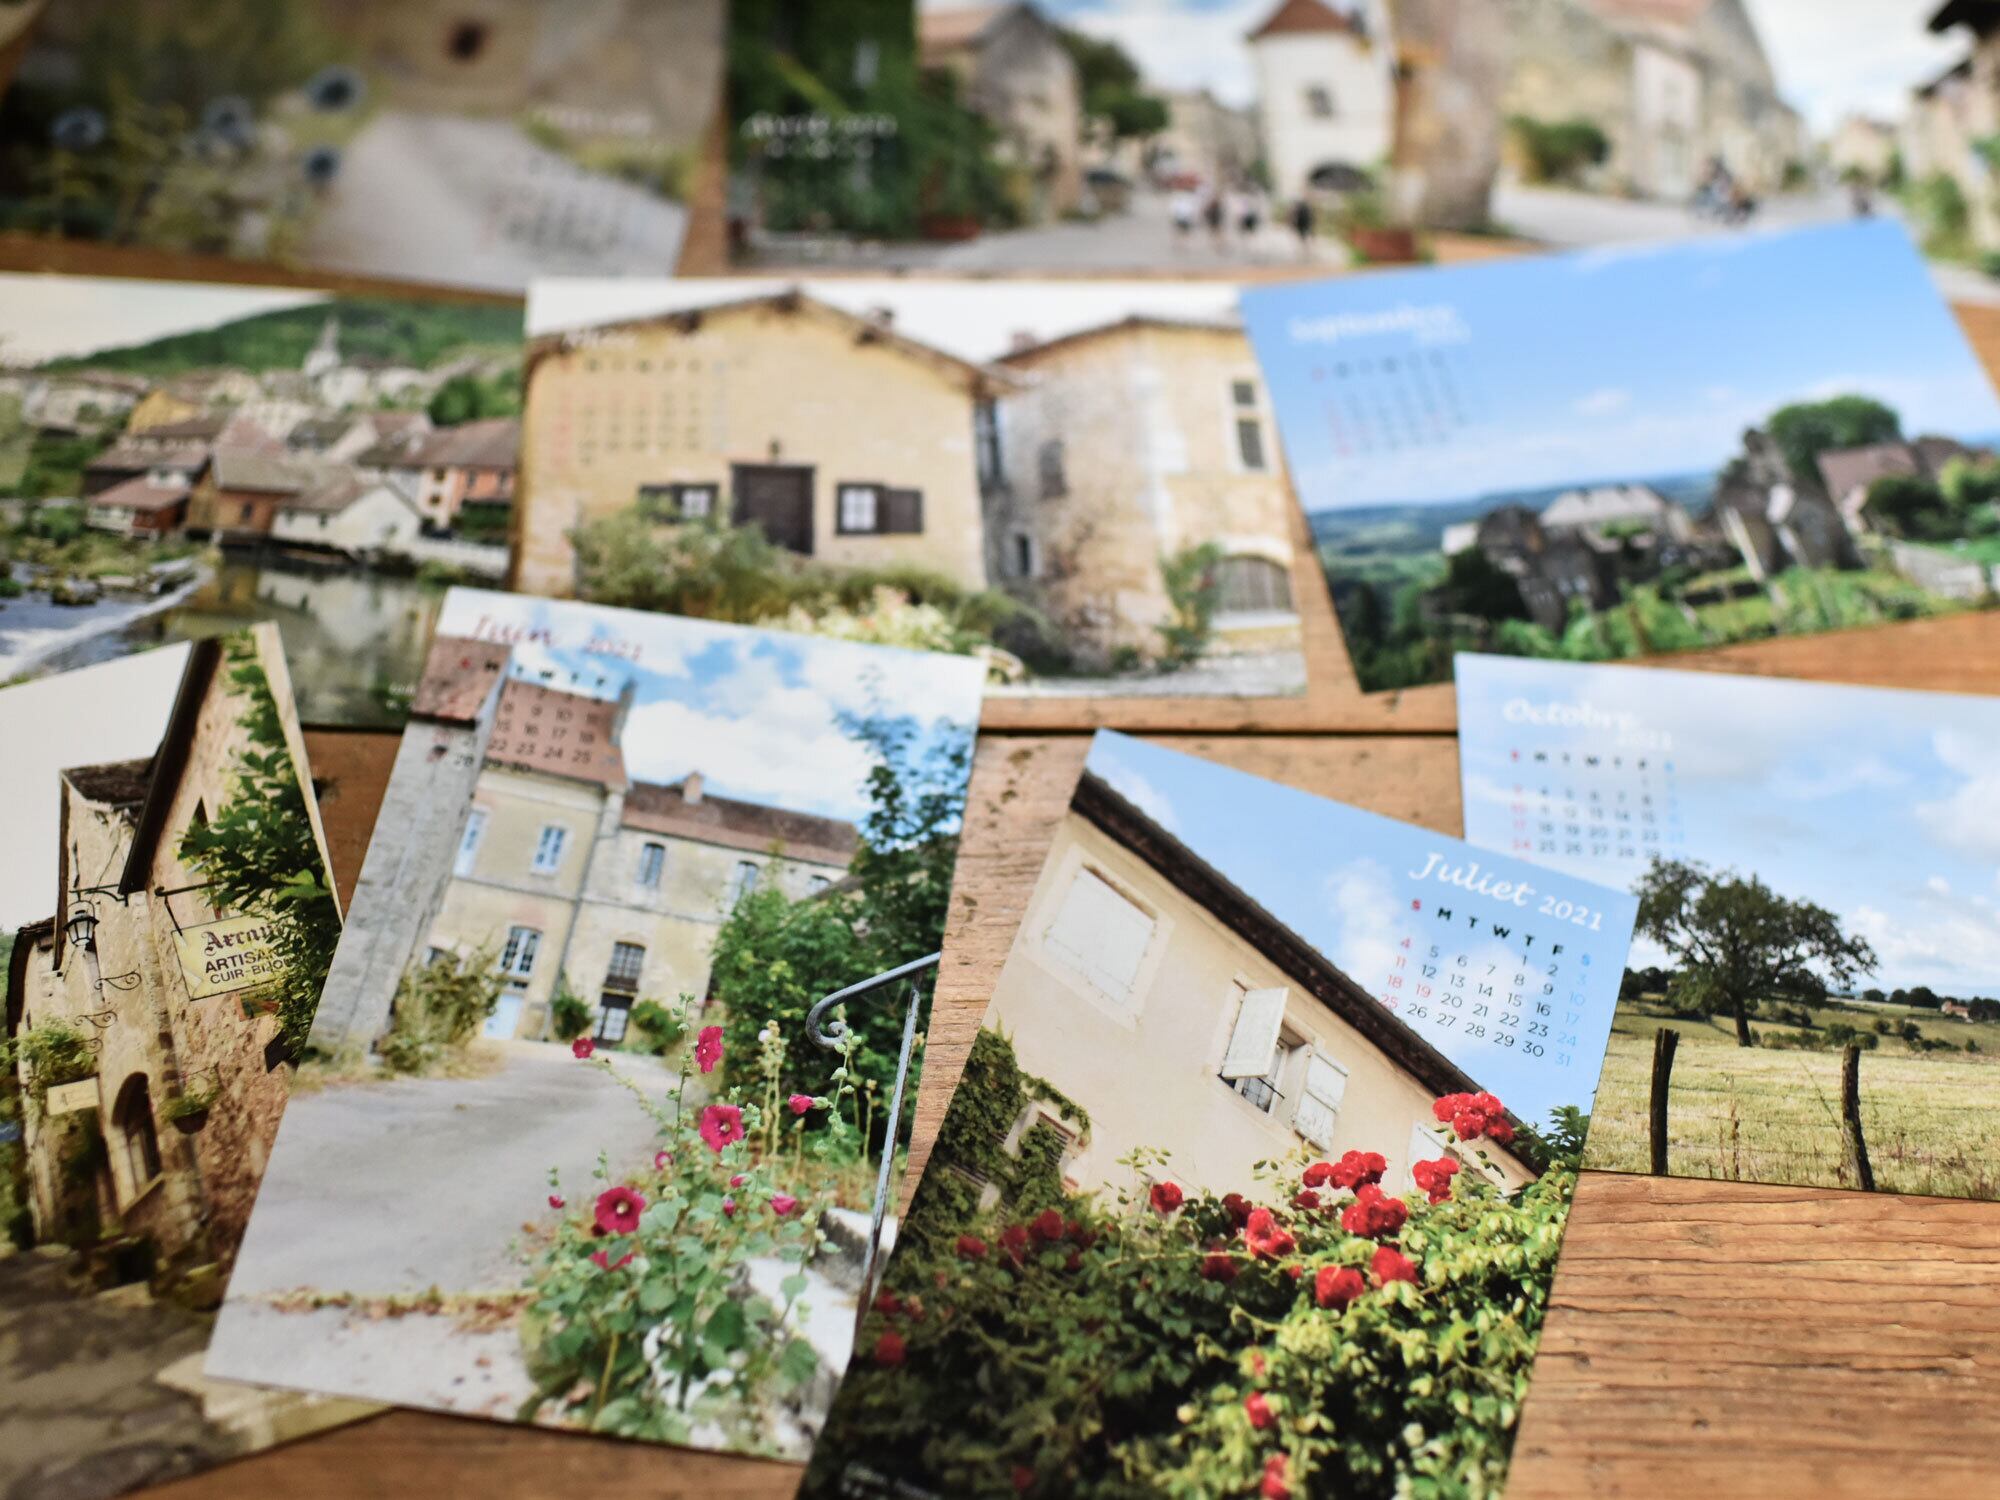 ＜セット商品（2）＞2021年「フランスの小さな村」ポストカードカレンダー + 壁フォト2枚のセット